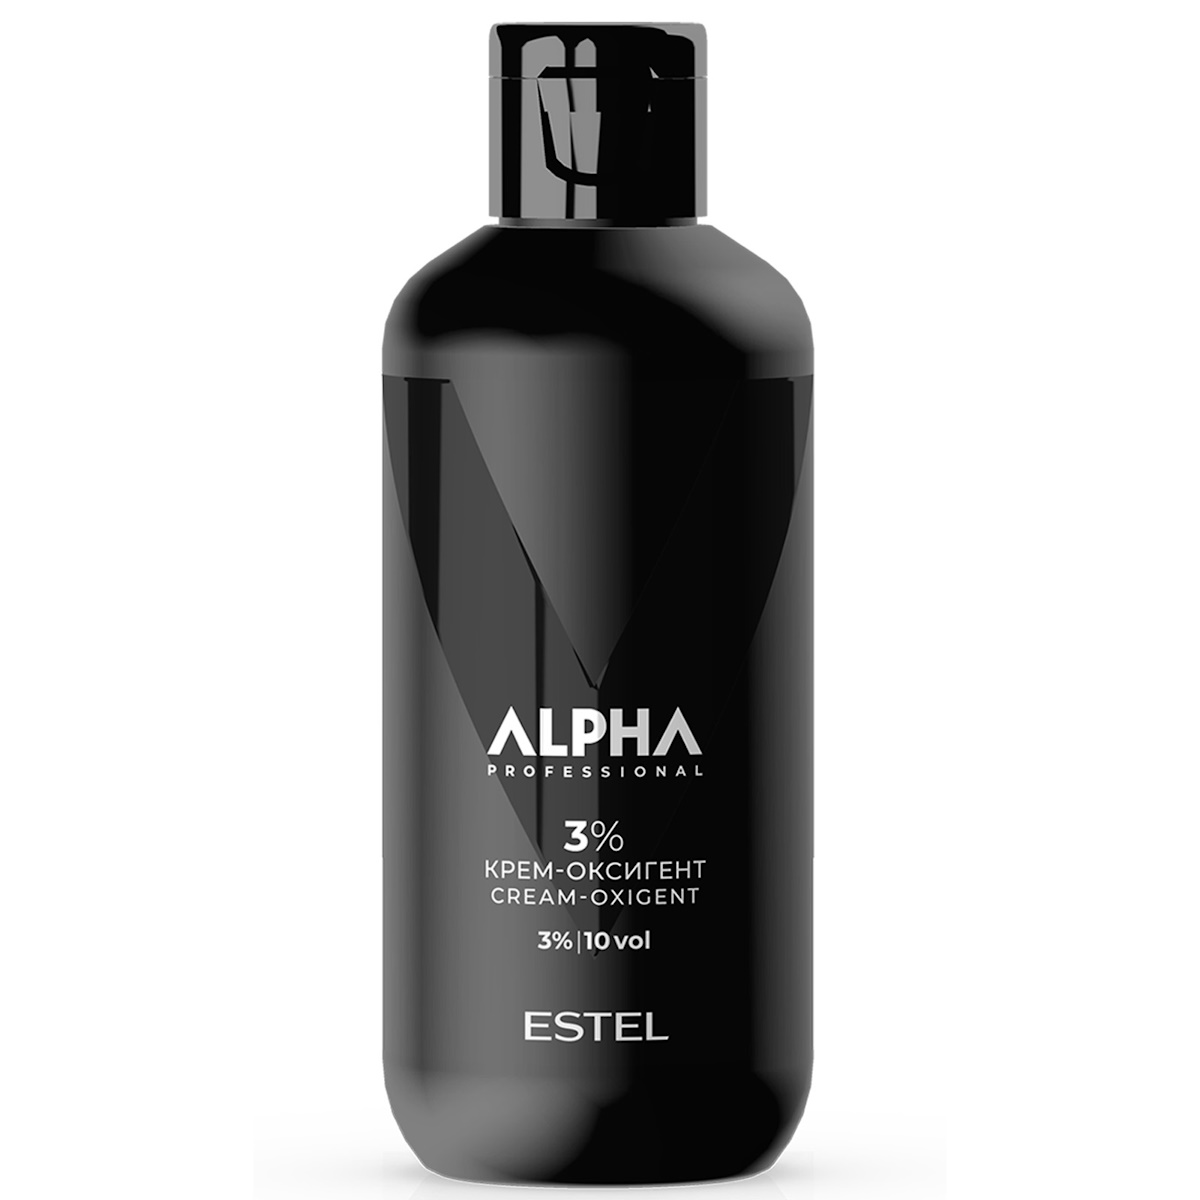 Крем-оксигент ALPHA HOMME 3 % ESTEL PROFESSIONAL 200 мл охлаждающий крем перед бритьем pre shave alpha homme pro